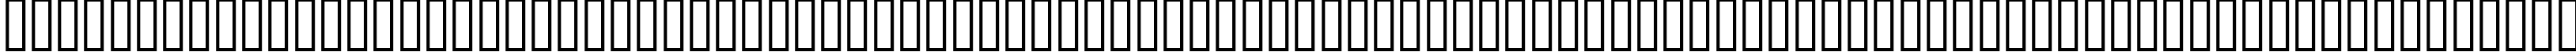 Пример написания русского алфавита шрифтом ELLIS